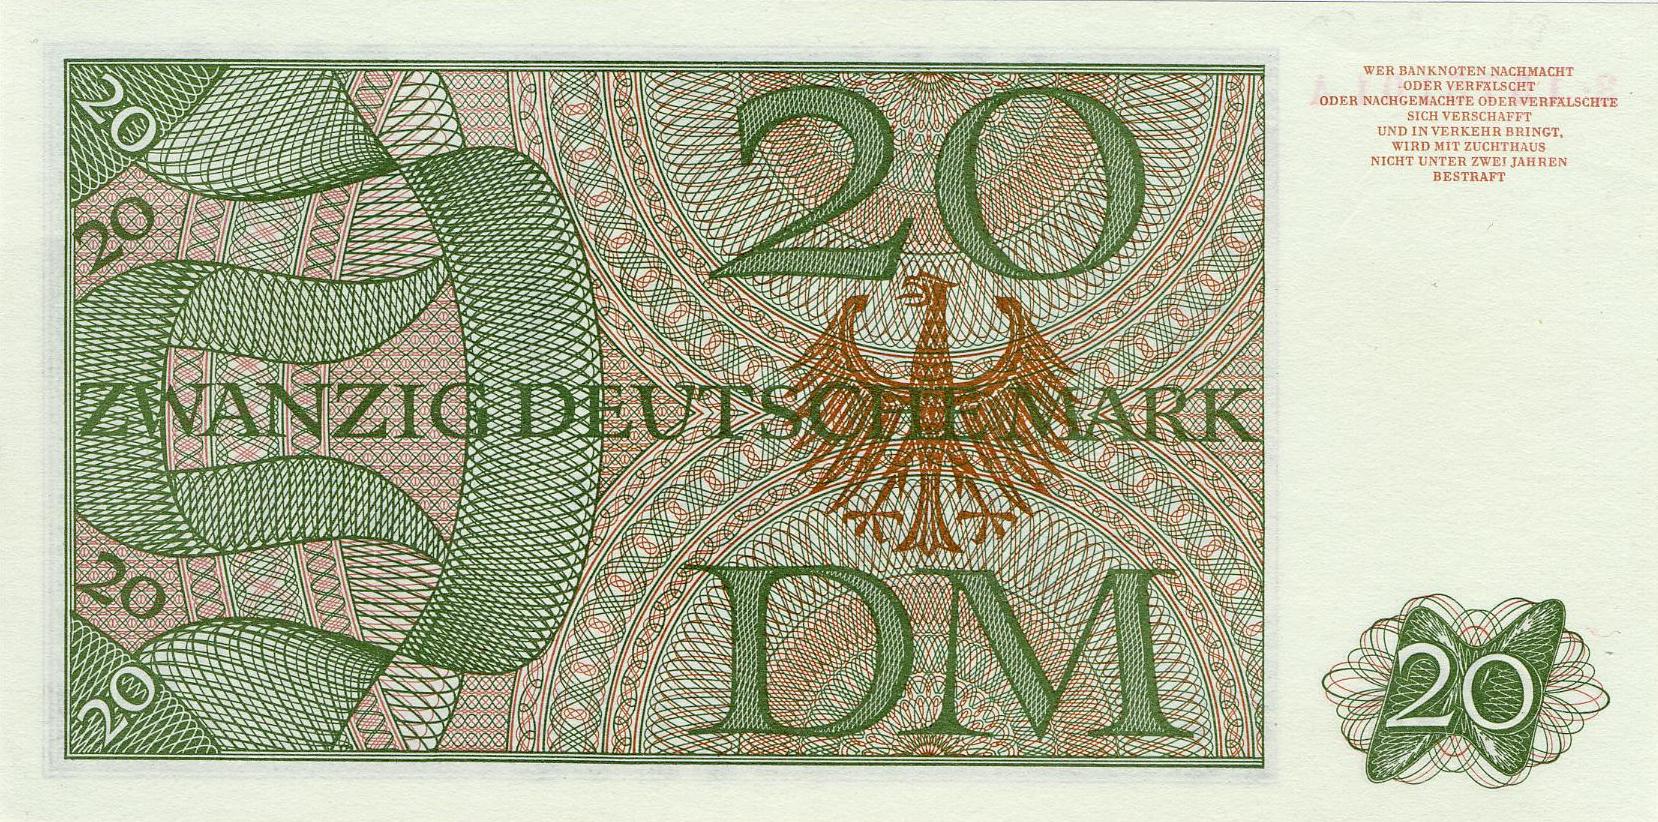 20 Deutsche Mark - Rückseite